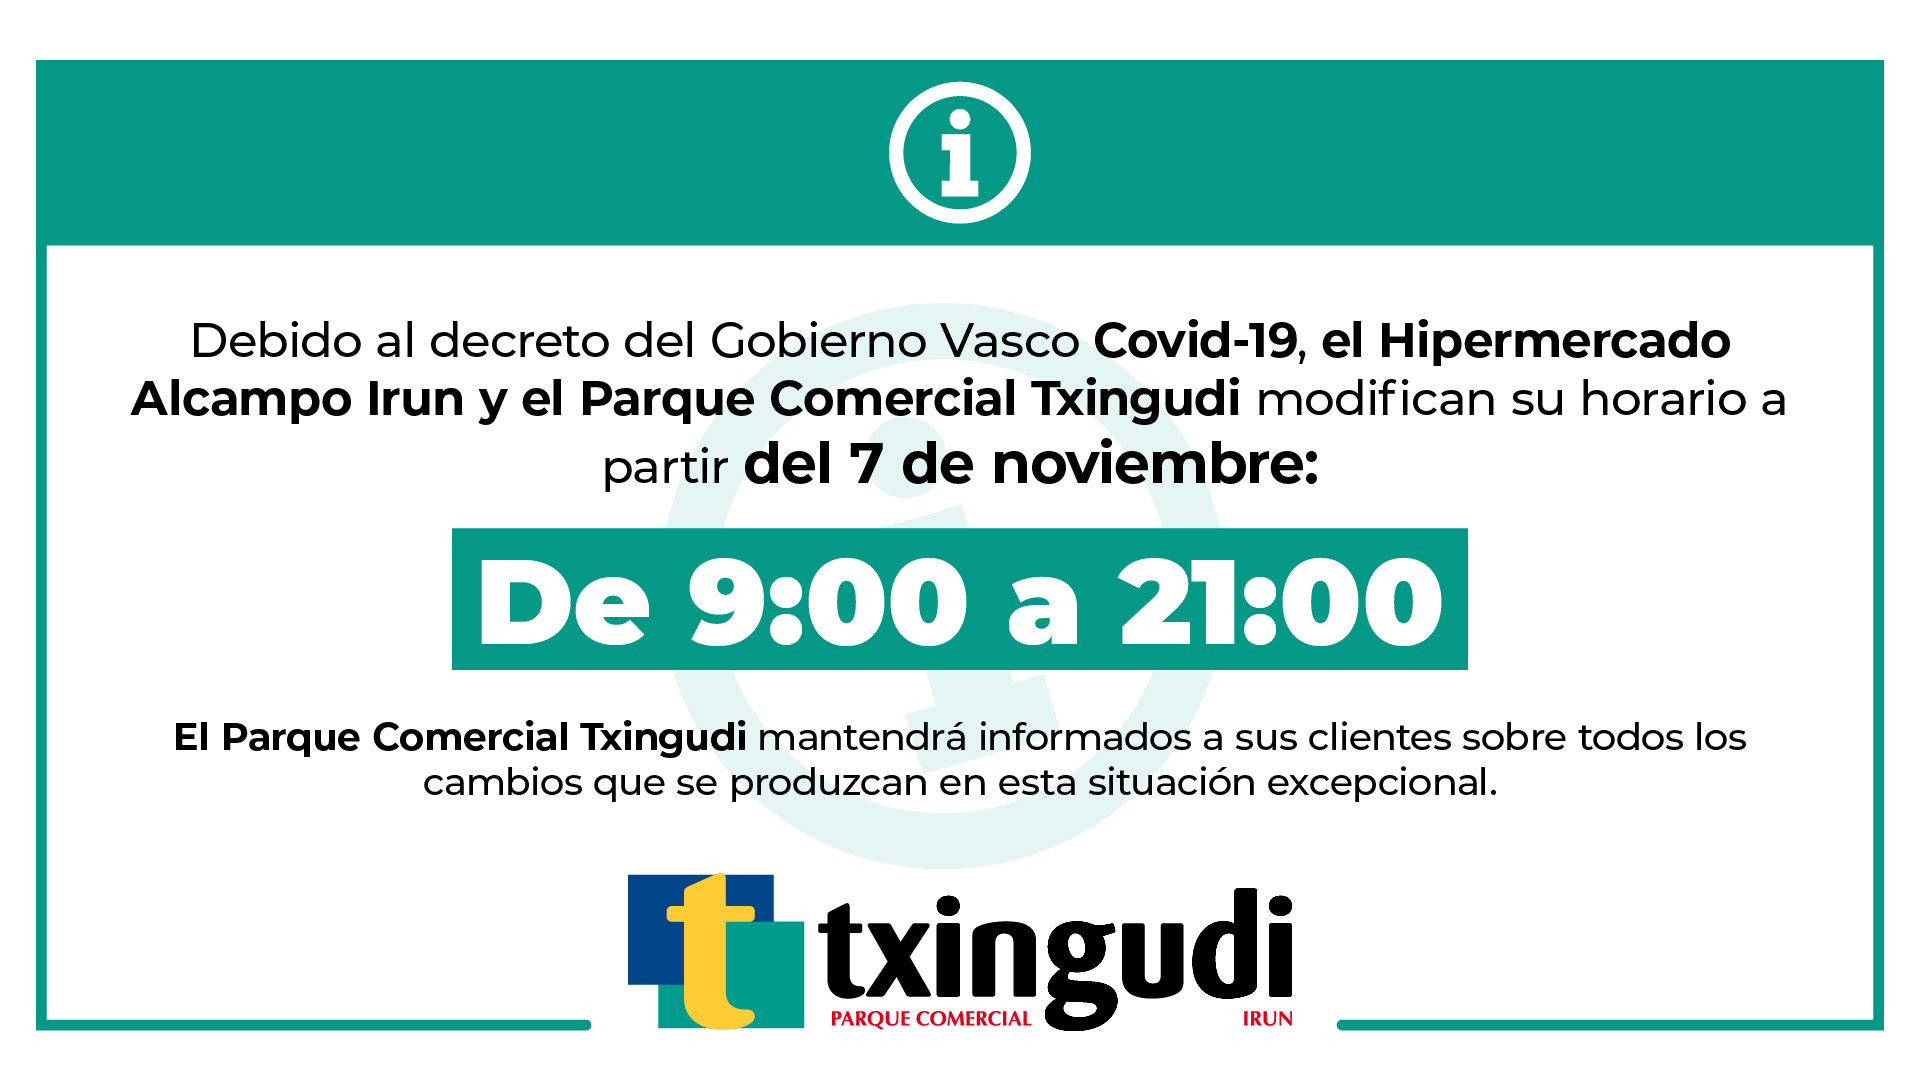 Nuevo horario a partir del 7 de noviembre (Decreto Gobierno Vasco Covid 19)